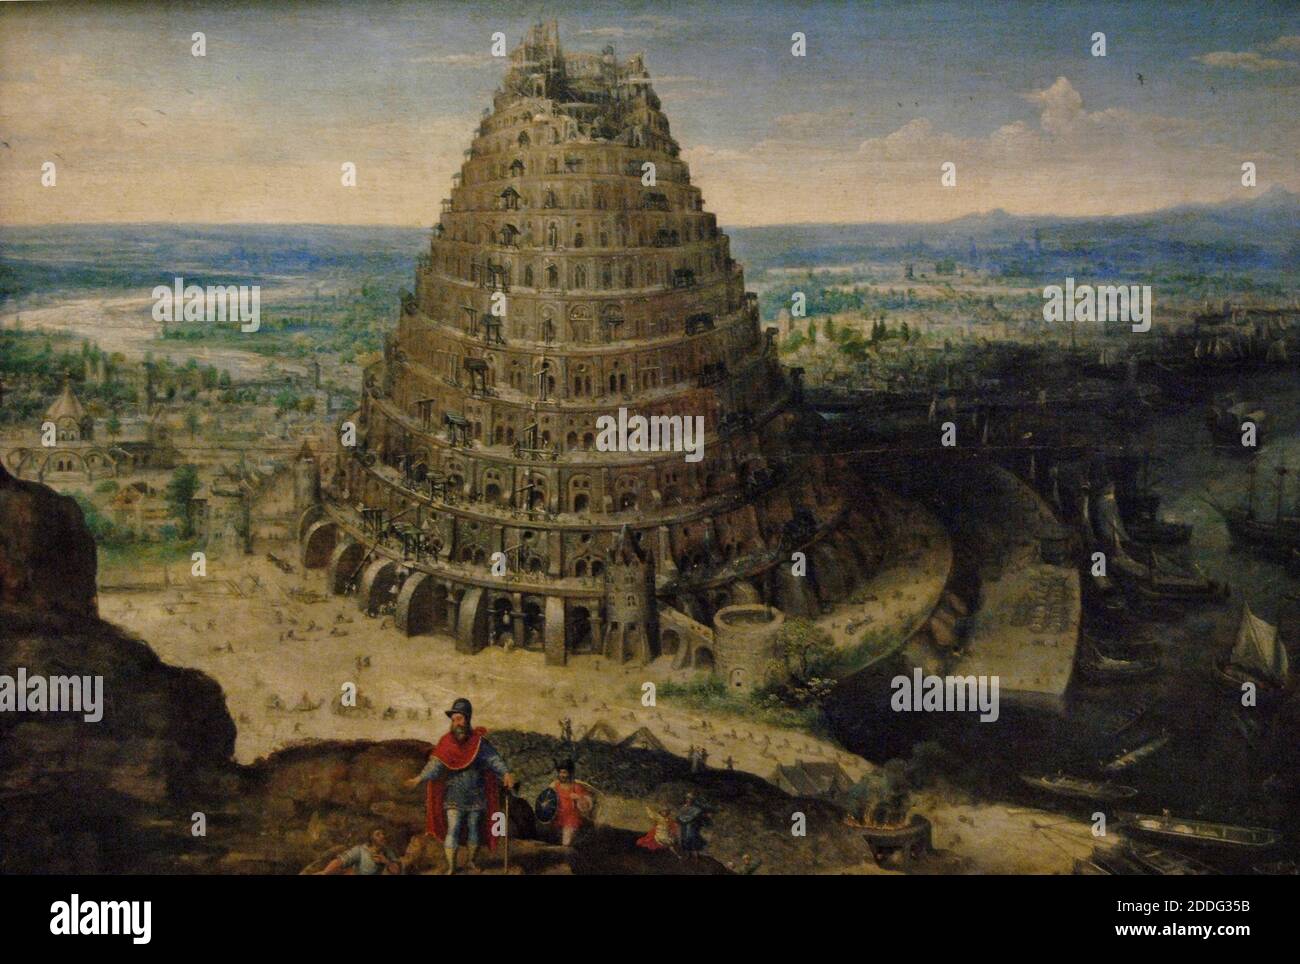 Lucas van Valckenborch (ca. 1535-1597). Flämischer Maler. Der Turm zu Babel, 1594. Öl auf Holz. Louvre Museum. Paris. Frankreich. Stockfoto